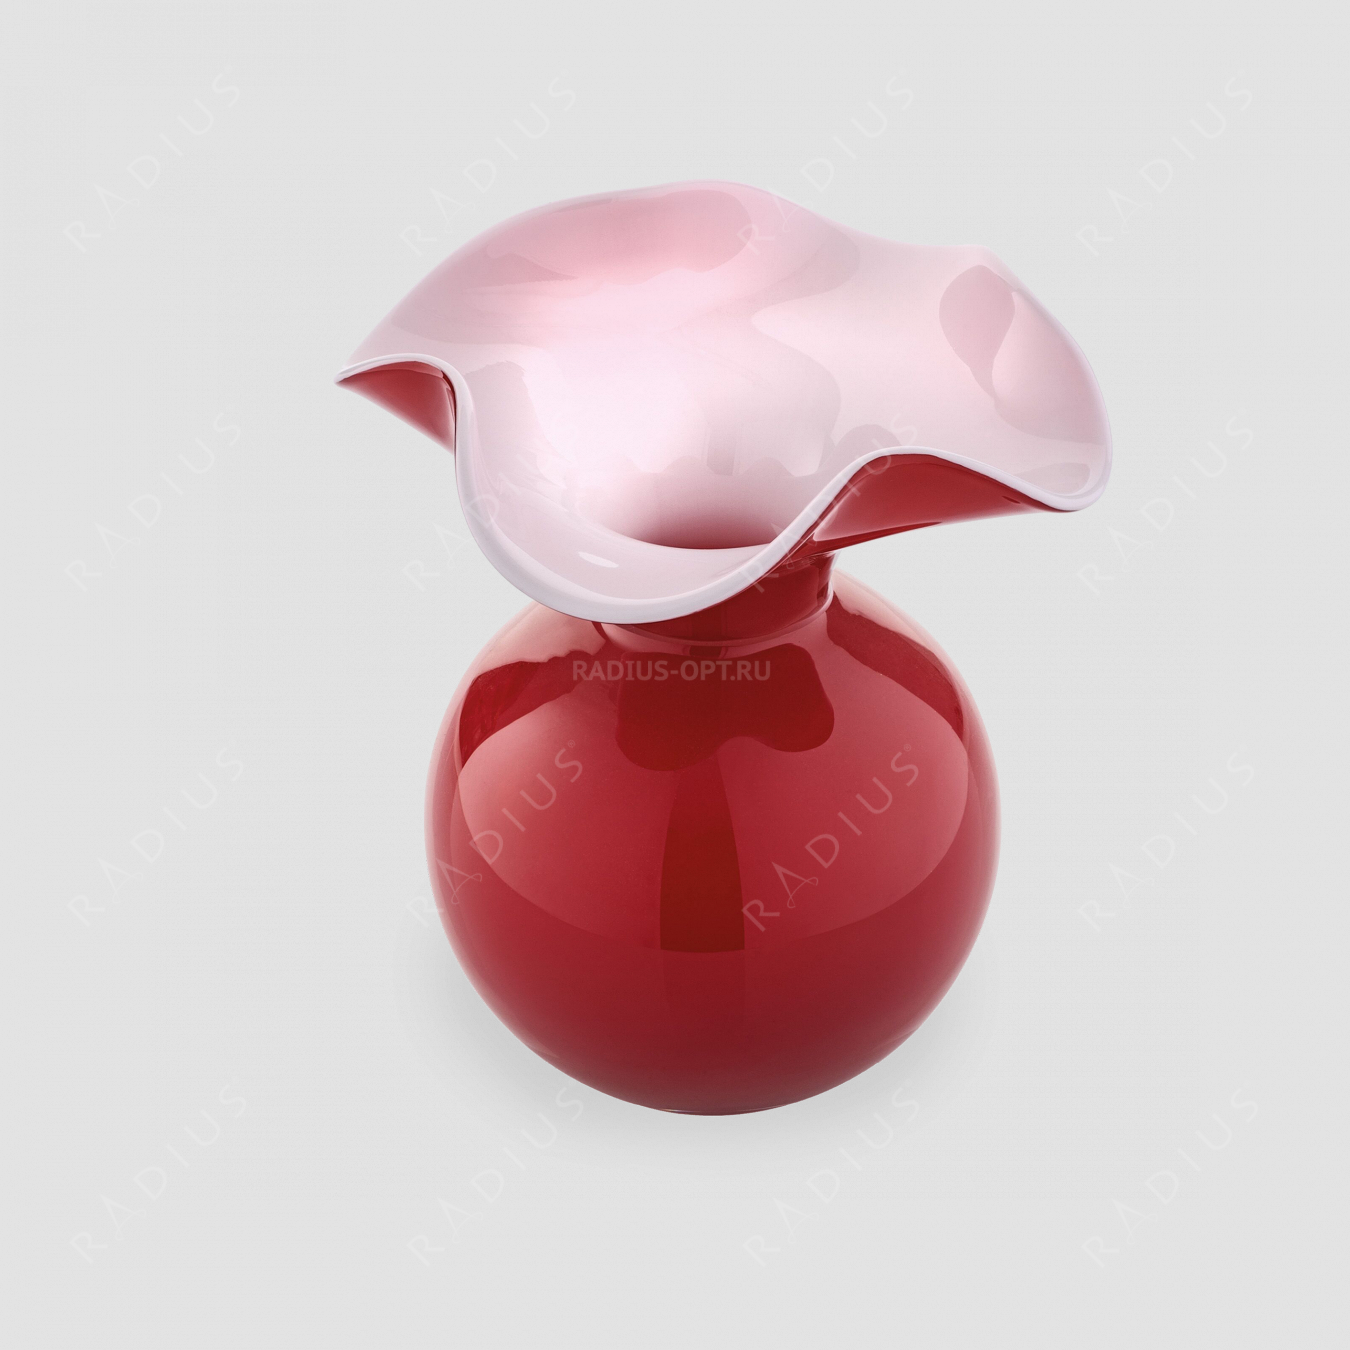 Стеклянная ваза для цветов, диаметр: 16 см, высота: 18 см, материал: стекло, цвет: красный, серия Primula, IVV (Italy), Италия